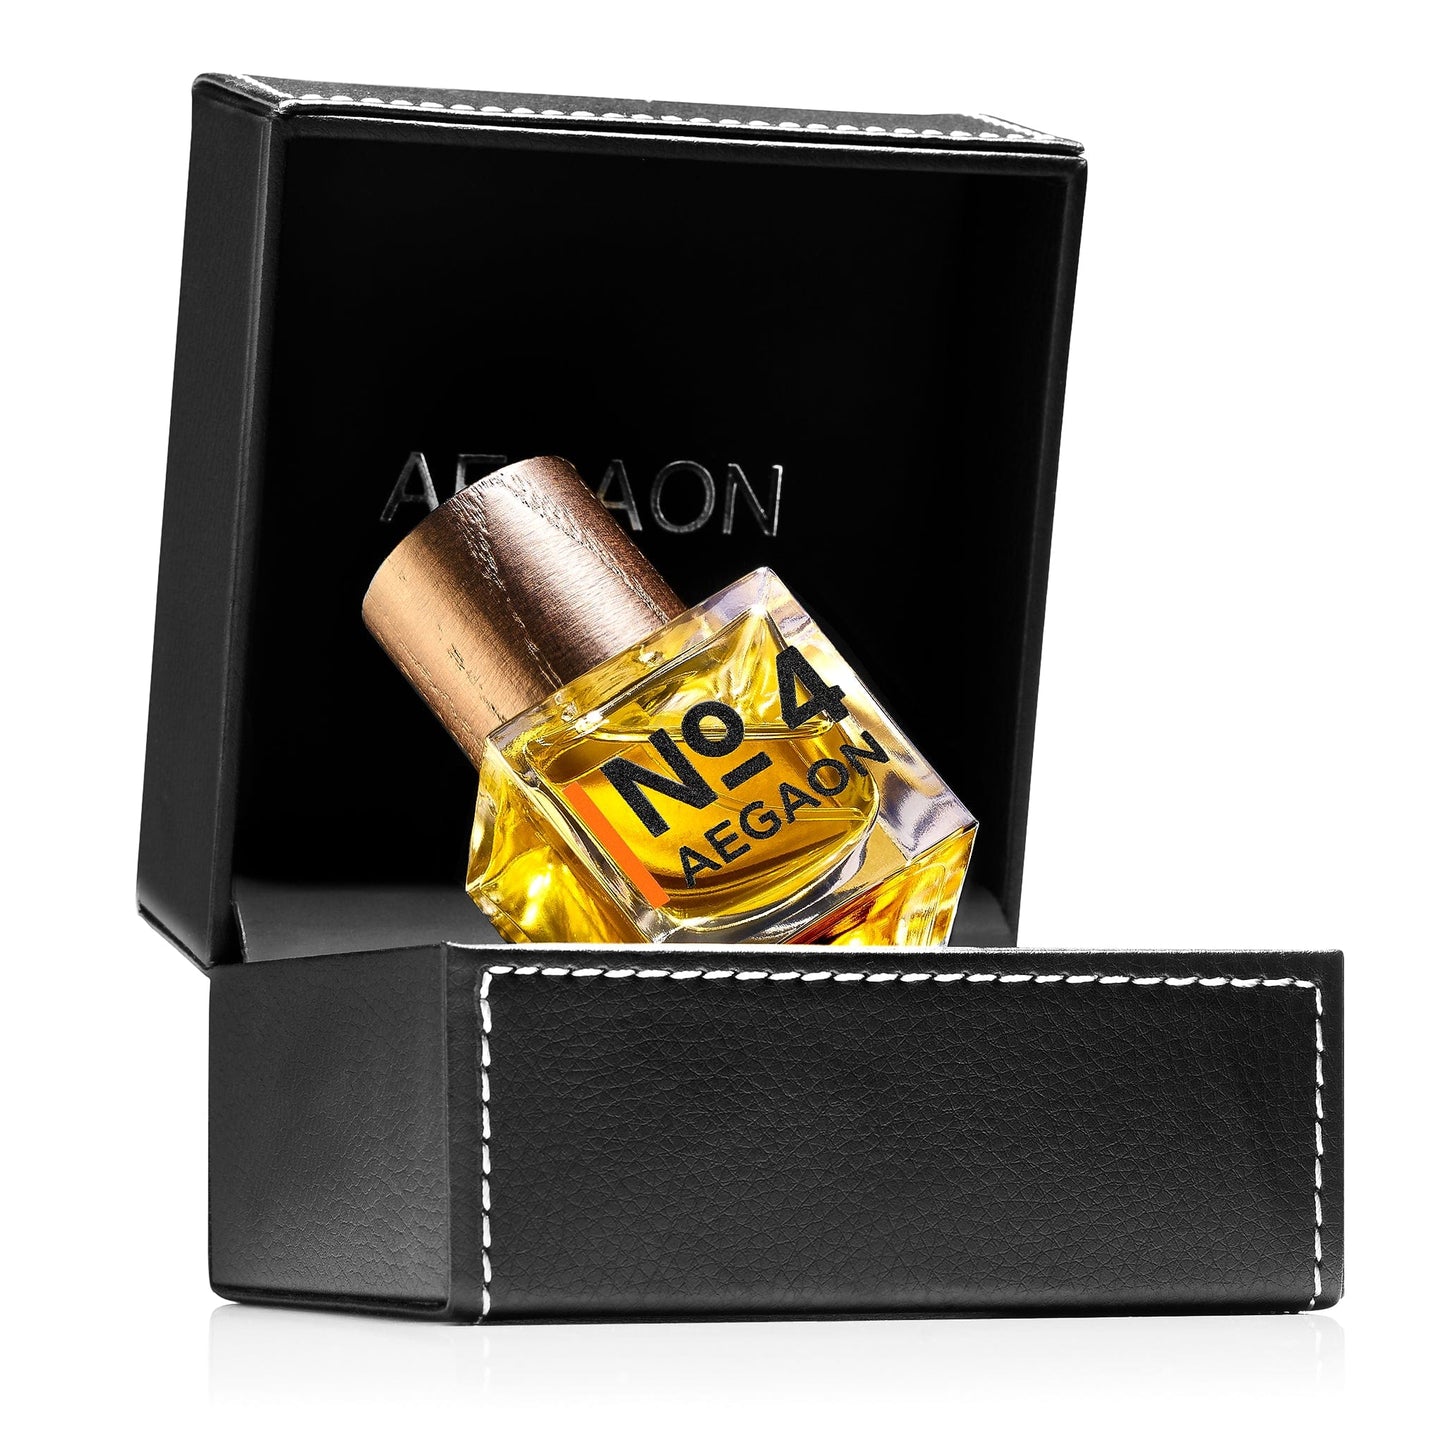 AEGAON No.4 Perfume